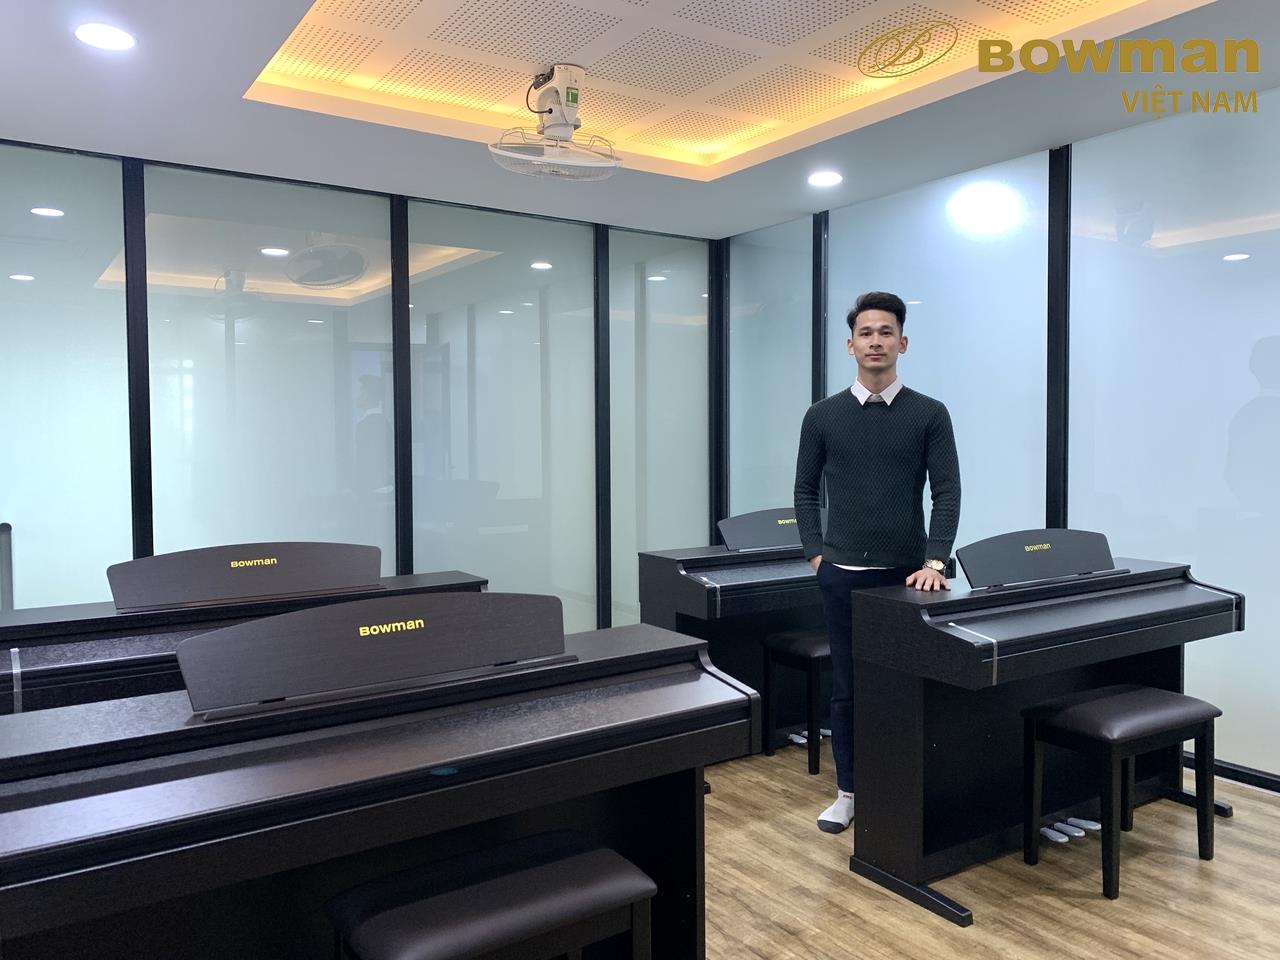 Bowman PIANO Việt Nam setup BOWMAN CX200 cho lớp học đàn PIANO